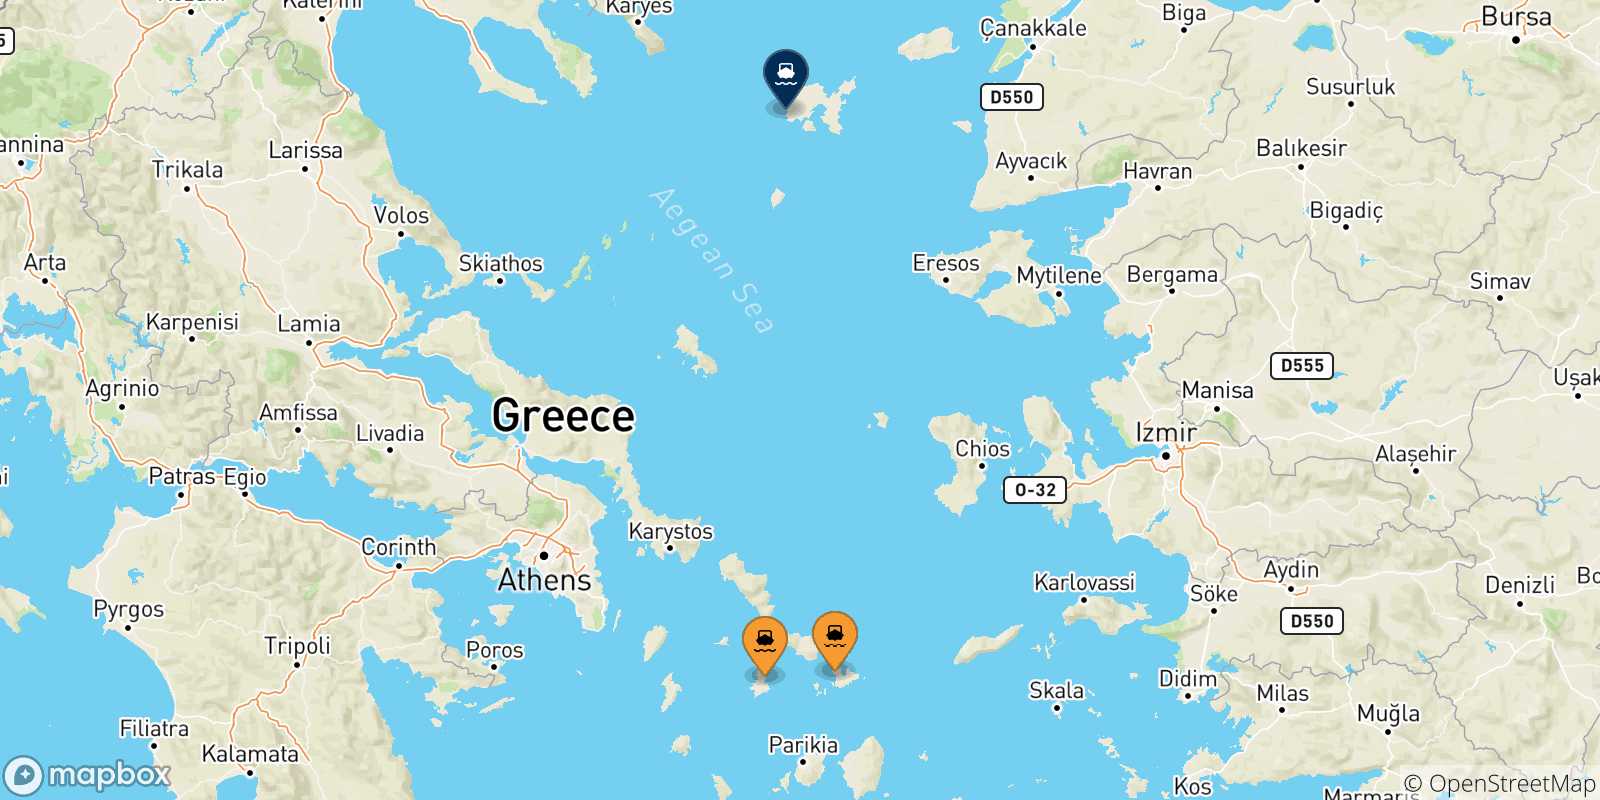 Mappa delle possibili rotte tra le Isole Cicladi e Mirina (Limnos)